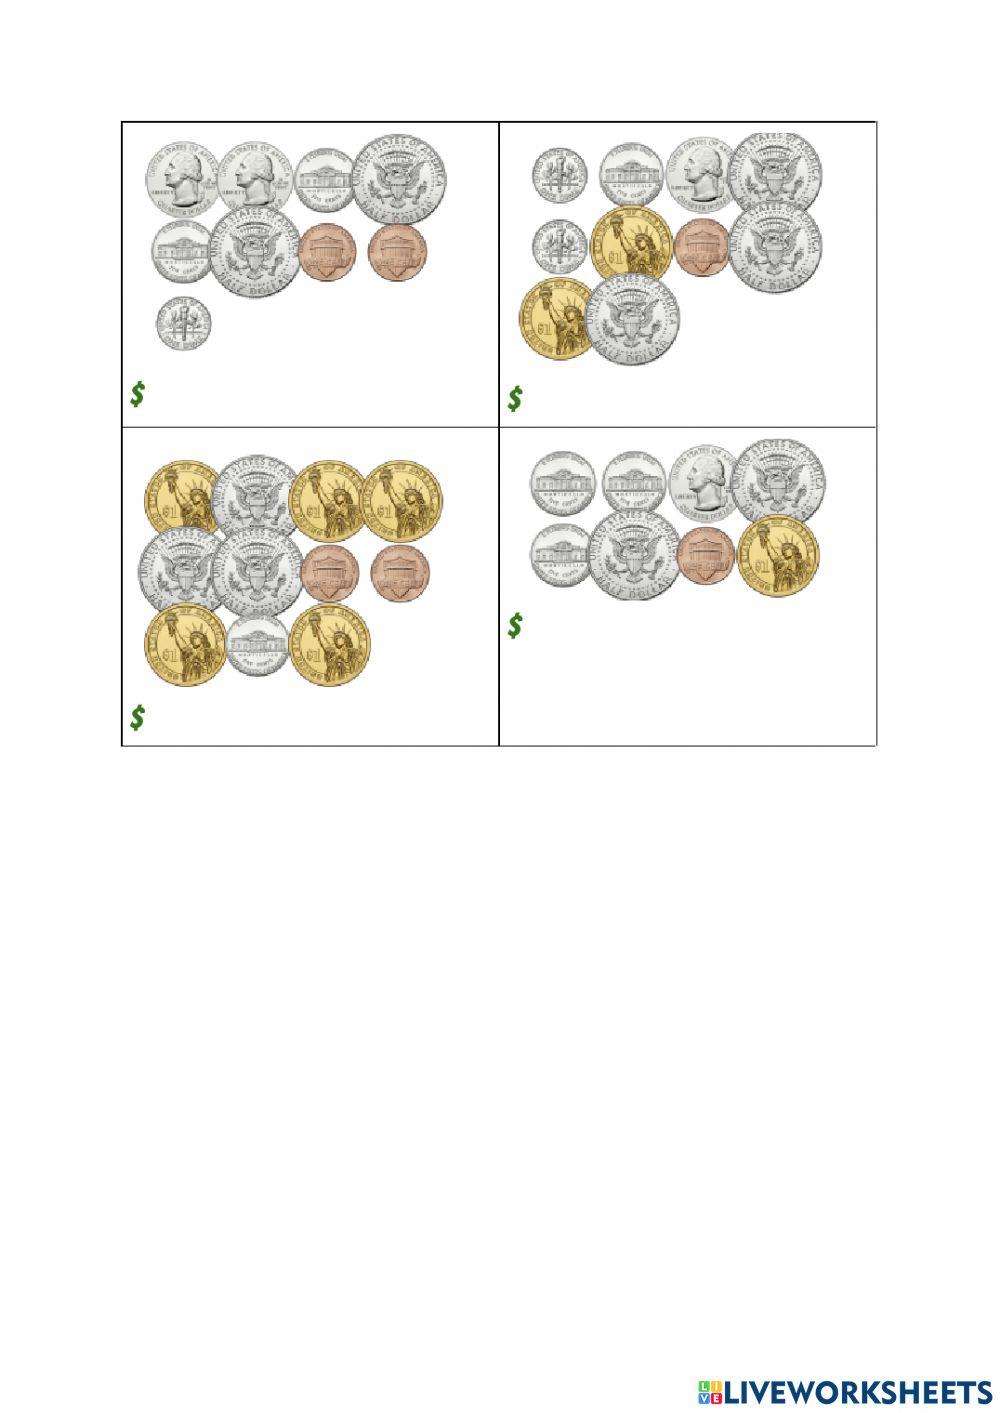 Contando monedas